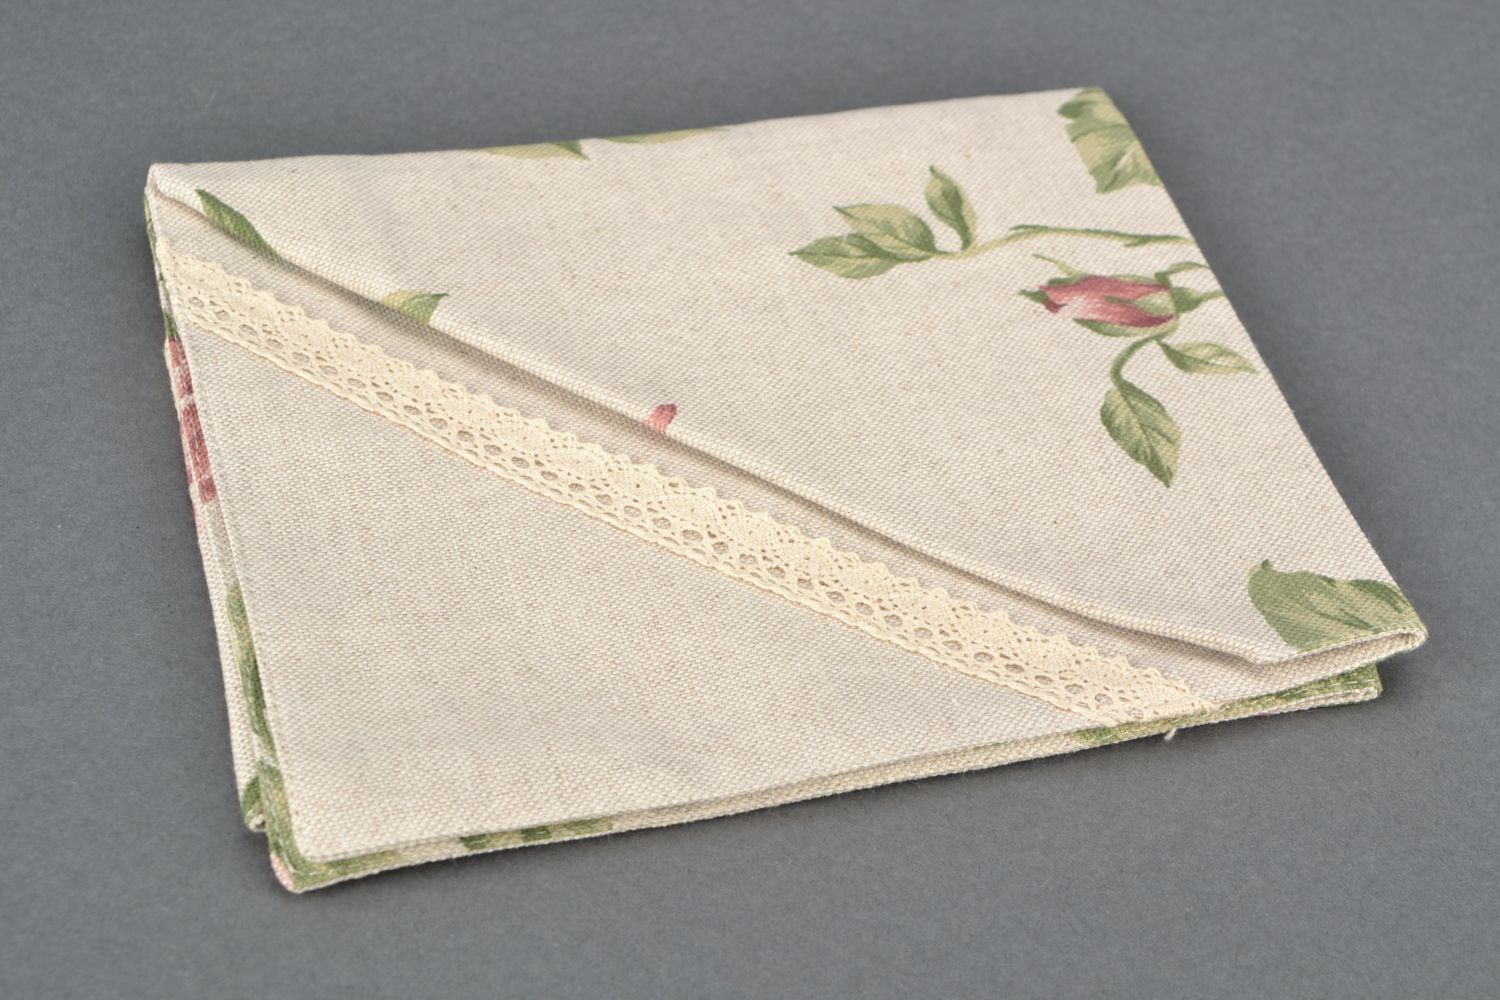 Large double-sided decorative napkin photo 4